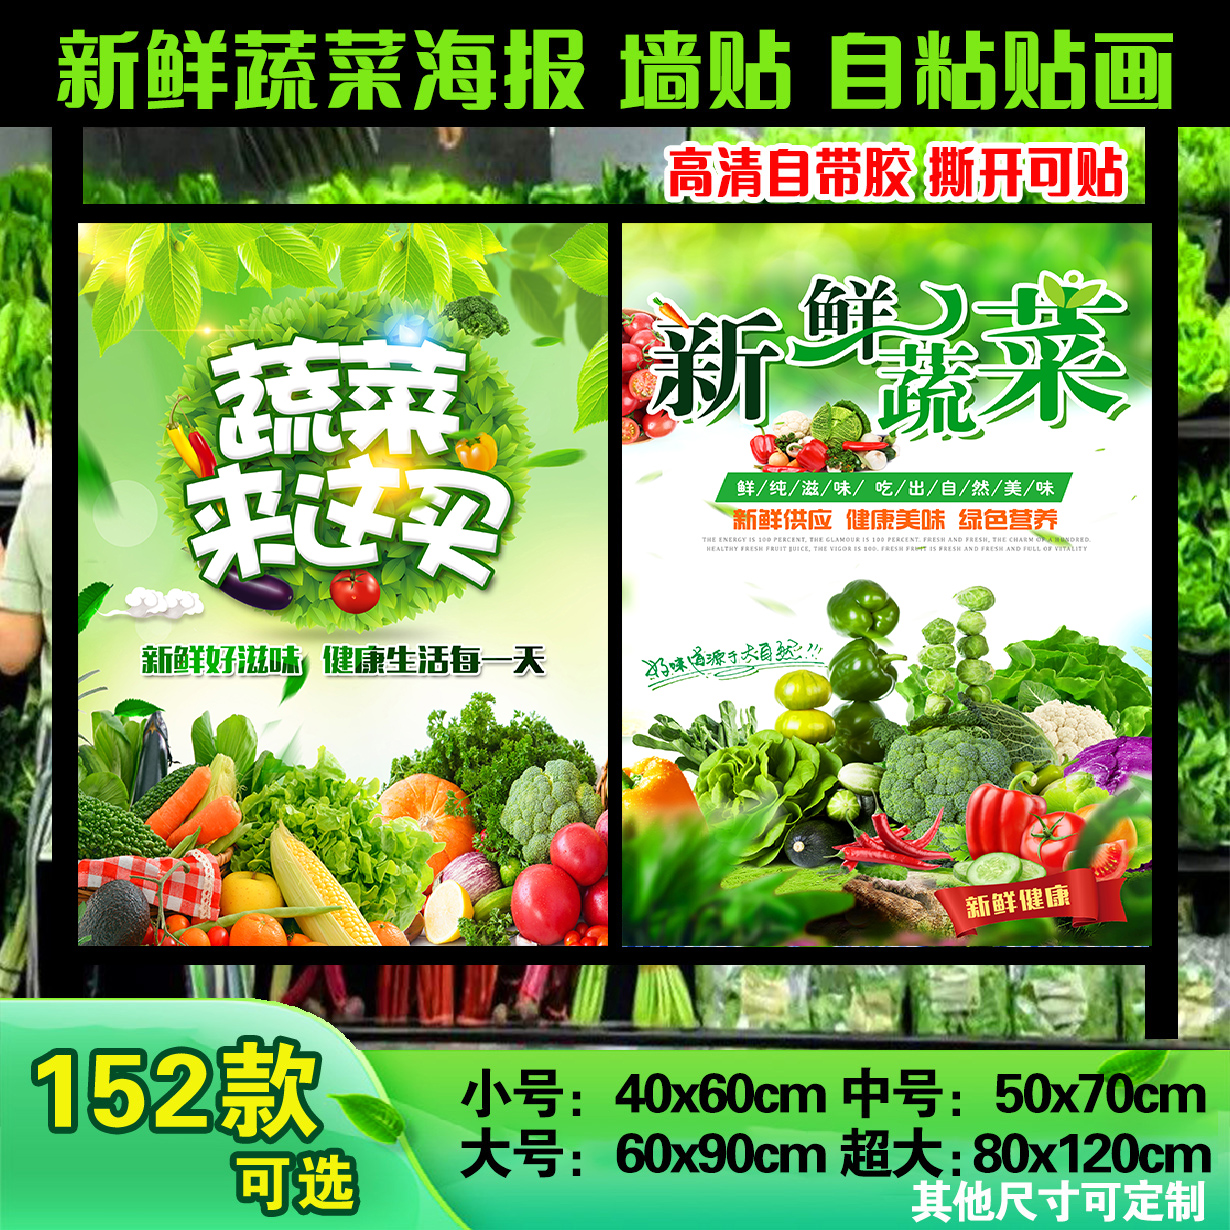 高清新鲜蔬菜生鲜超市蔬菜店墙贴海报装饰画自粘贴画宣传广告定制